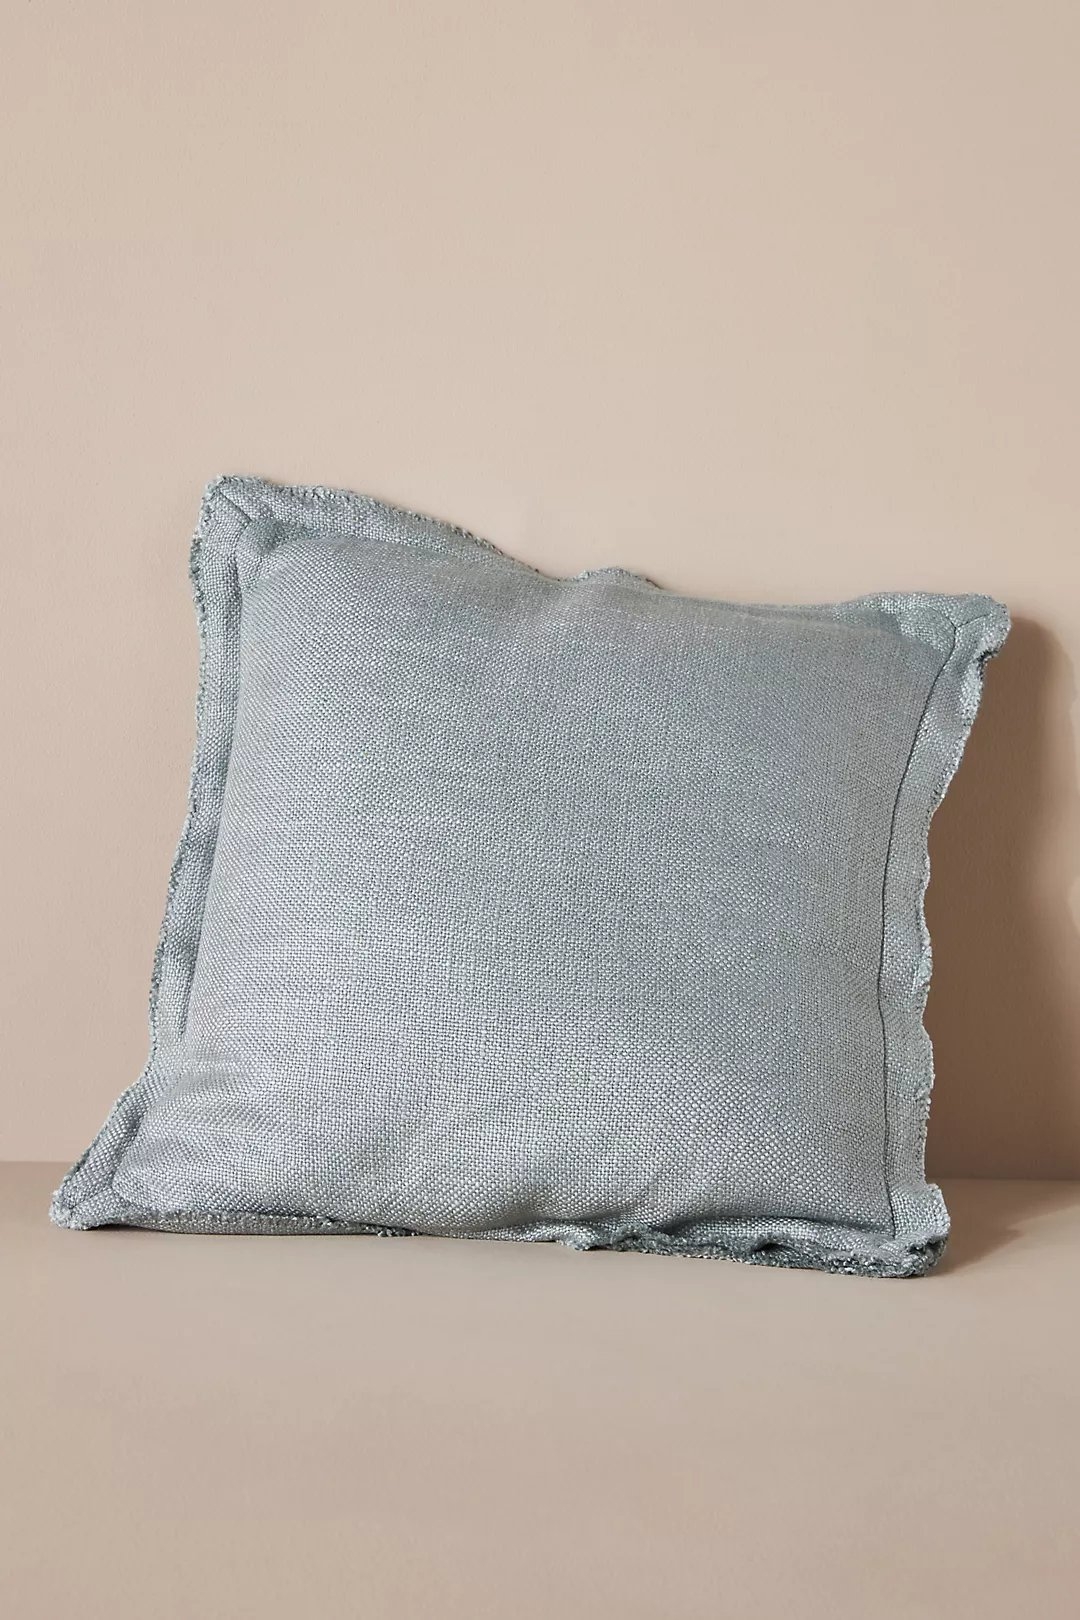 Luxe Linen Blend Pillow, Seafoam - Image 0